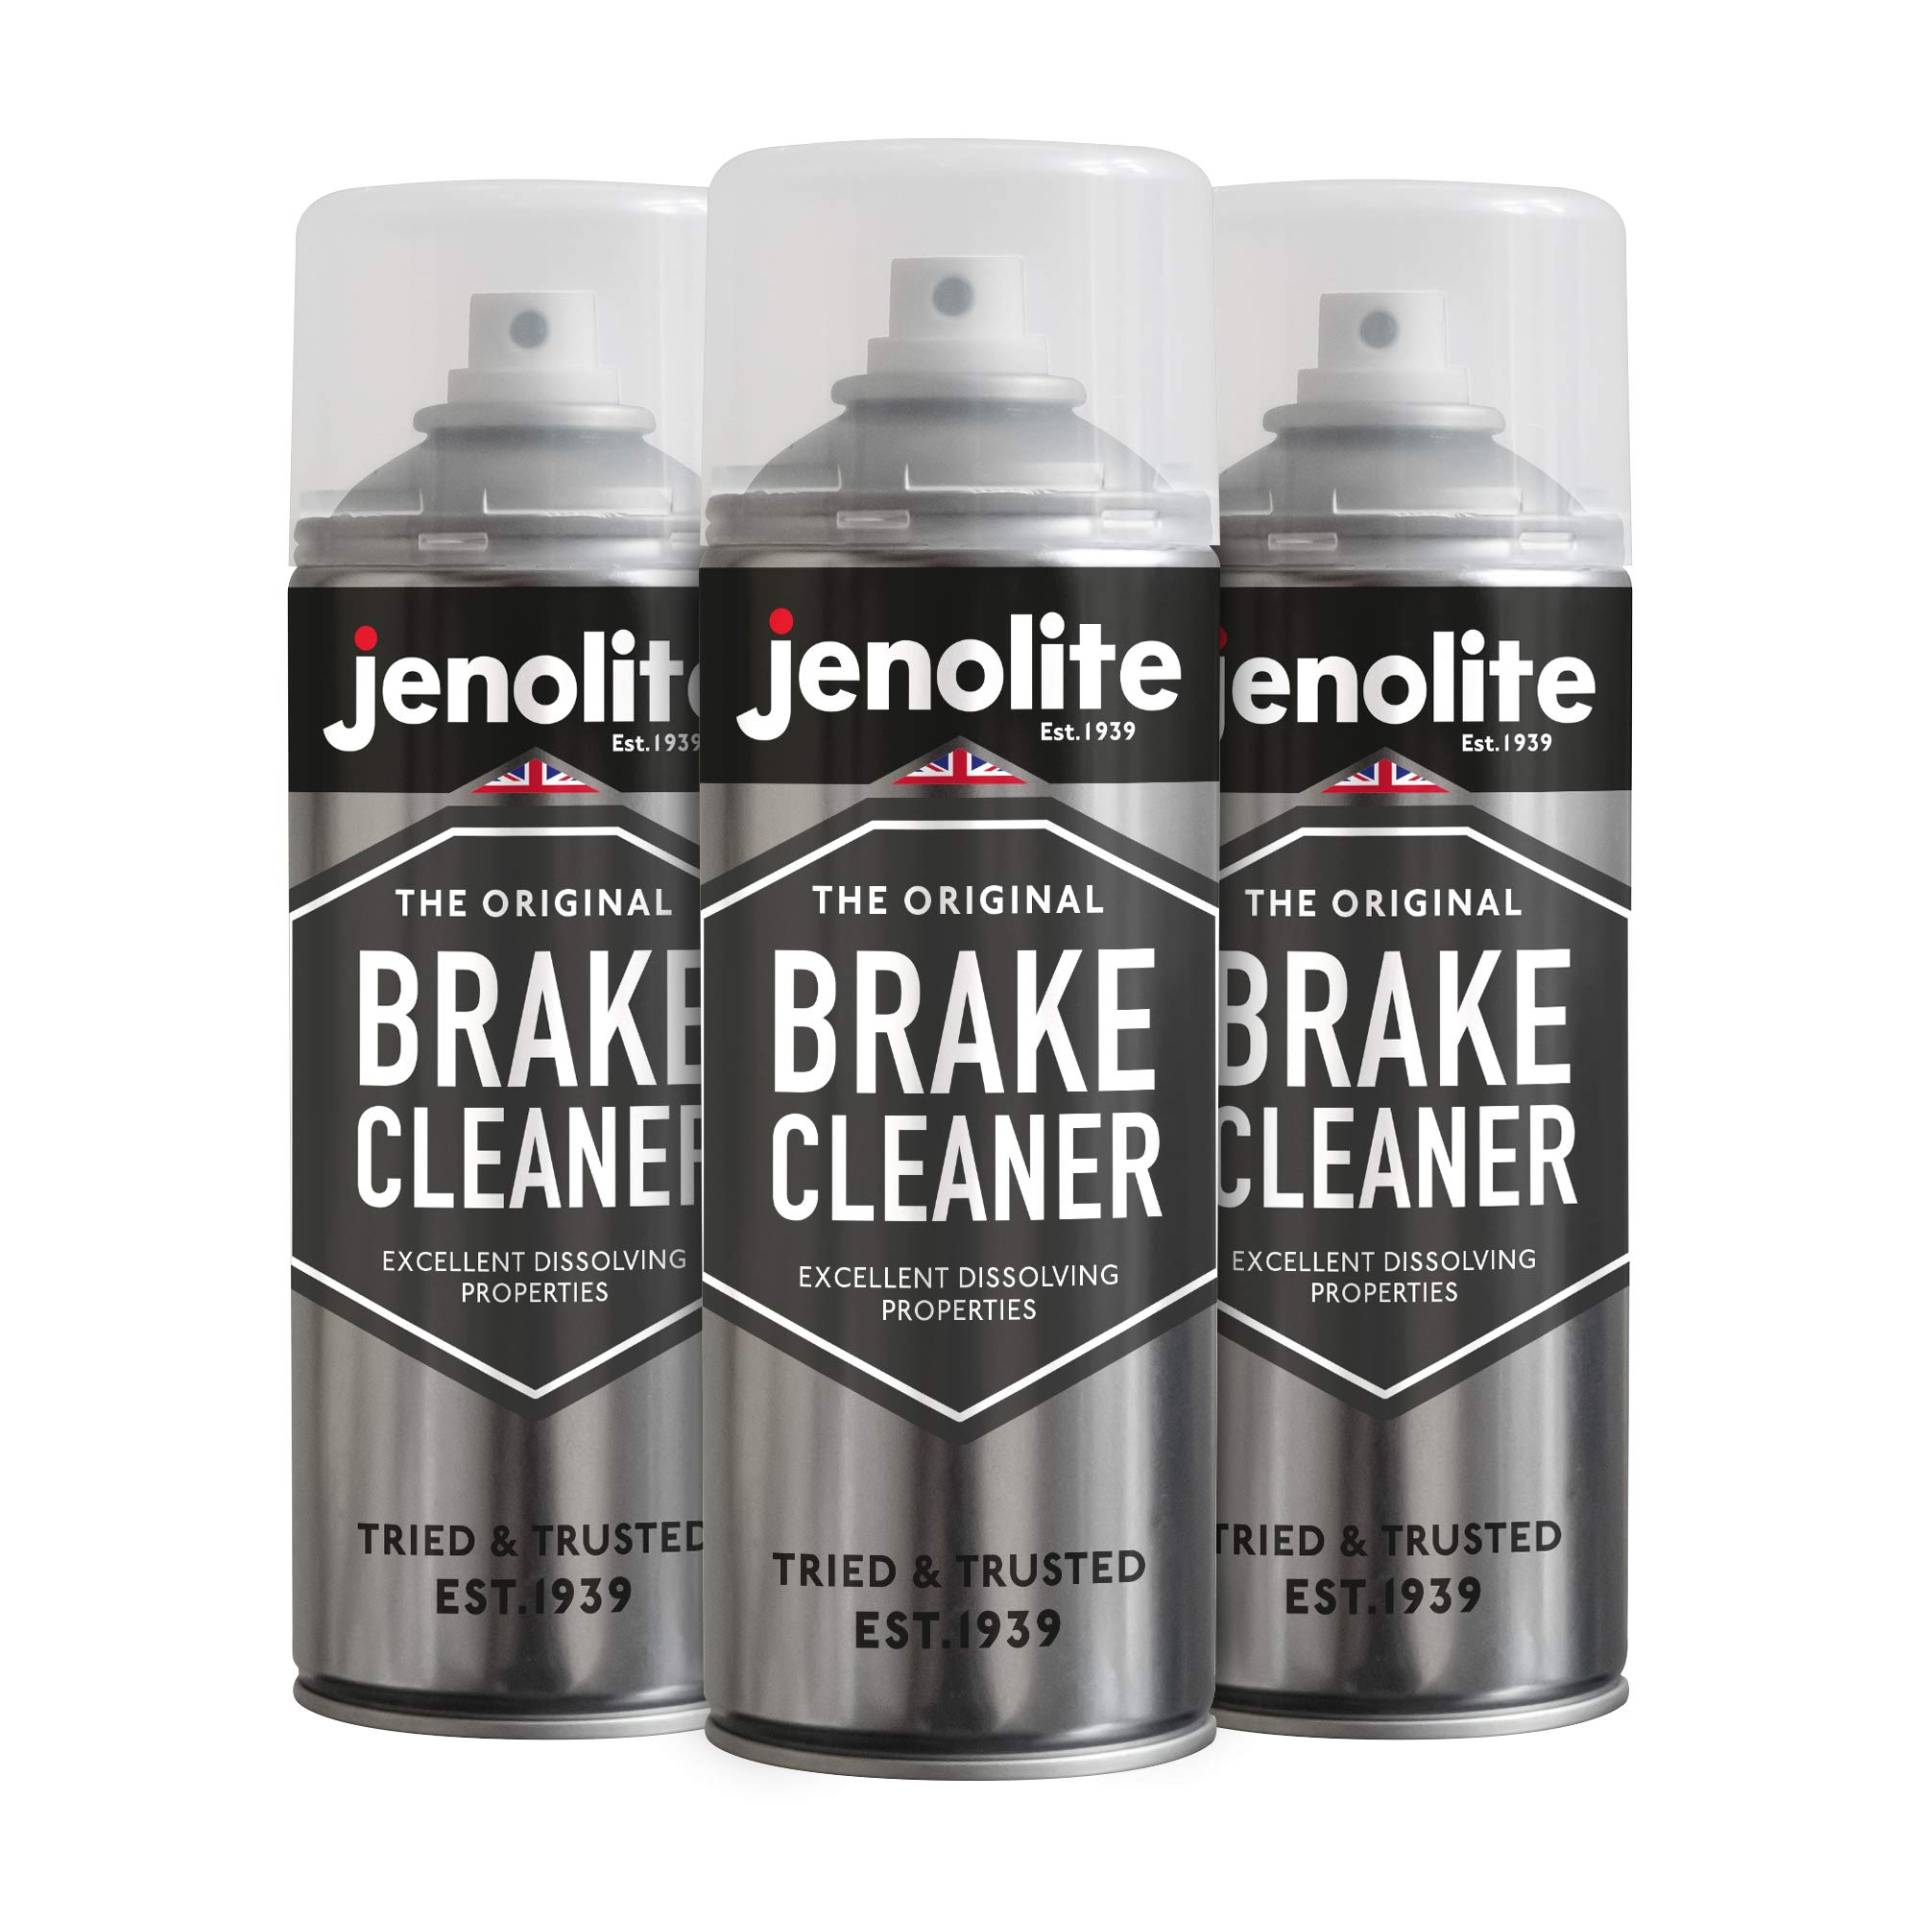 JENOLITE 3 x Bremsenreiniger Aerosol - 3 x 400ml (reduziert Bremsgeräusche & verbessert die Bremsleistung) von JENOLITE